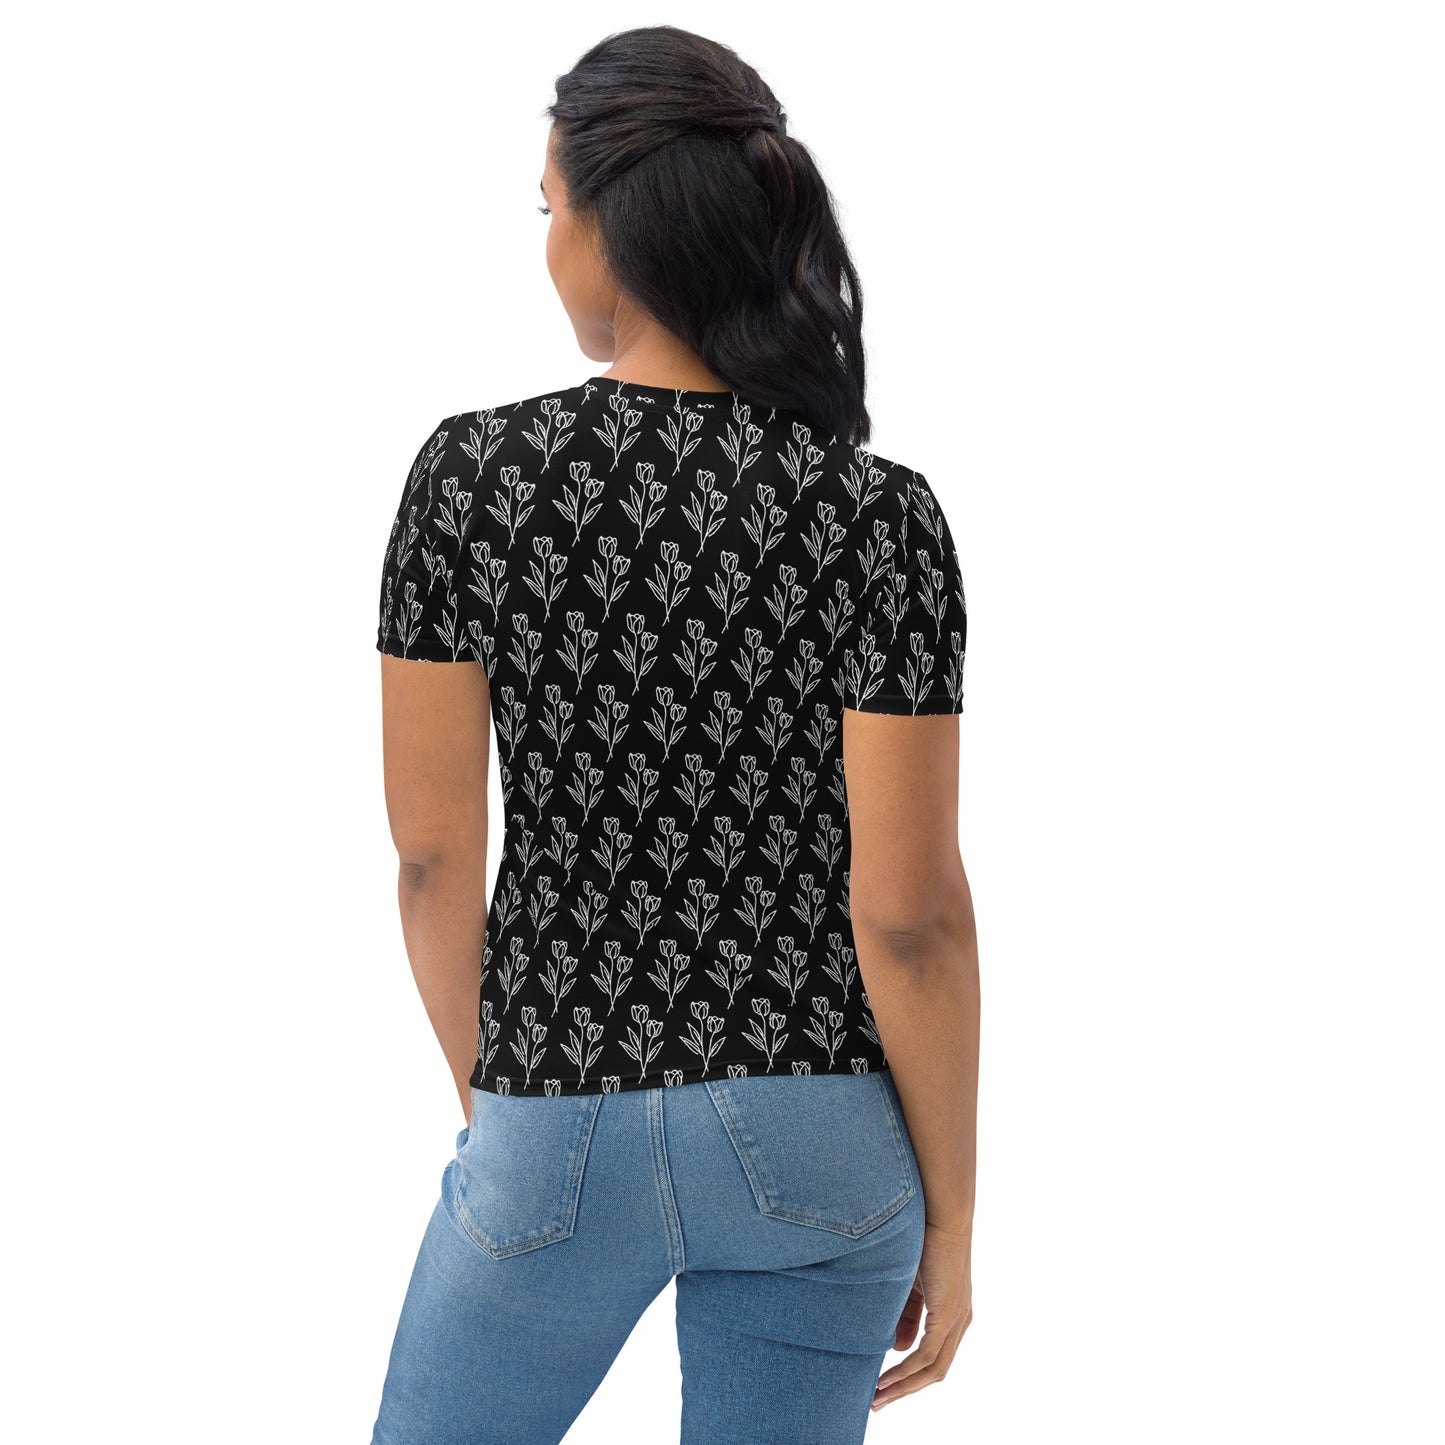 Women's T-shirt black tulip tattoo print